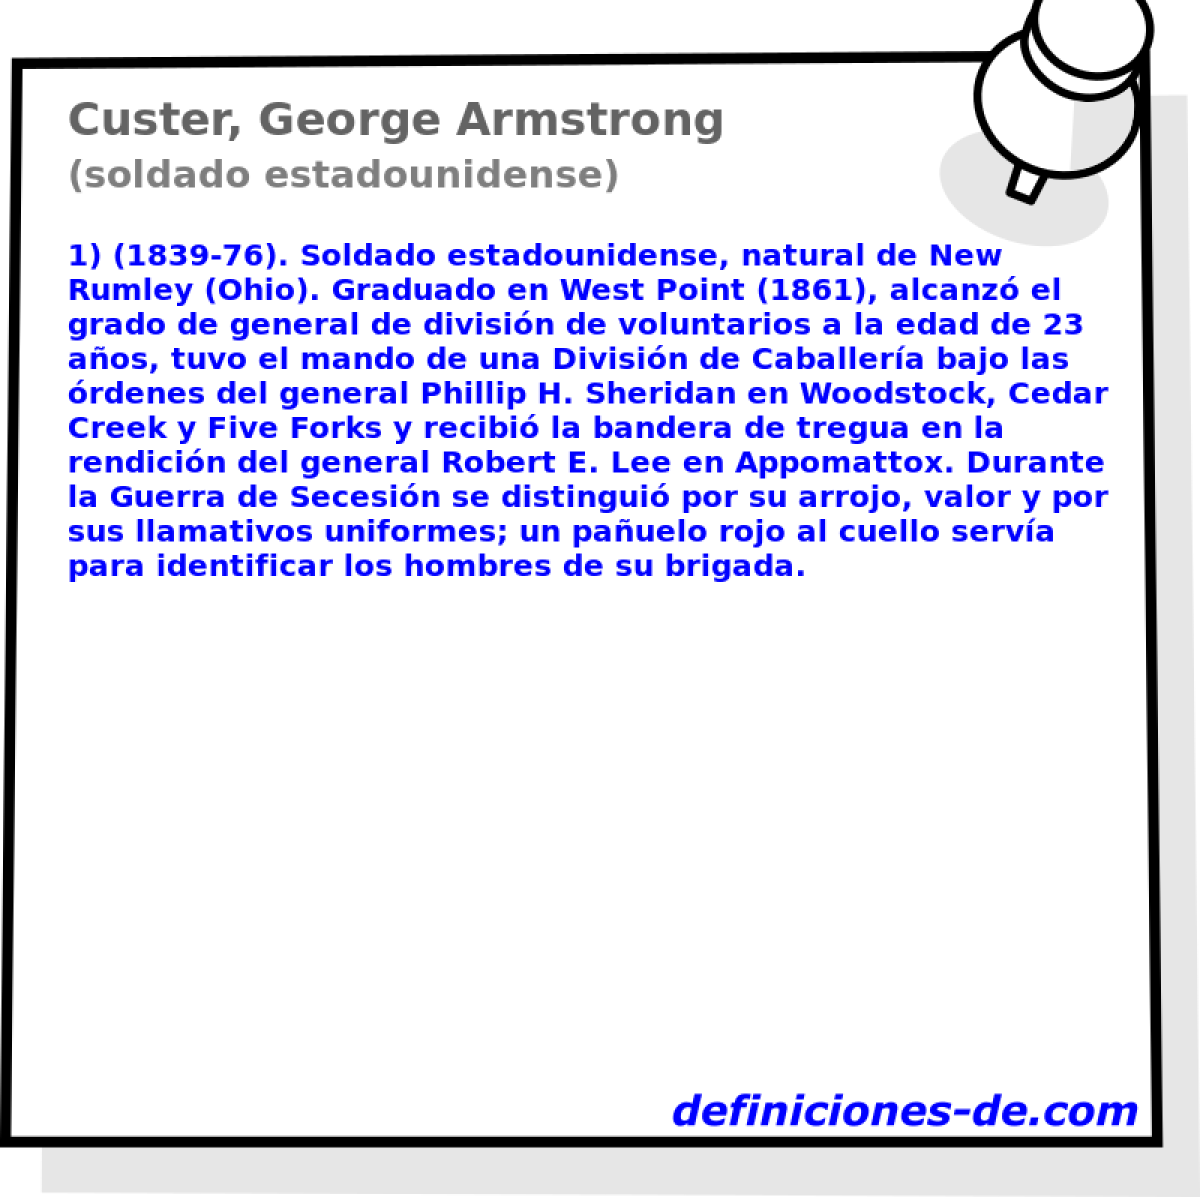 Custer, George Armstrong (soldado estadounidense)